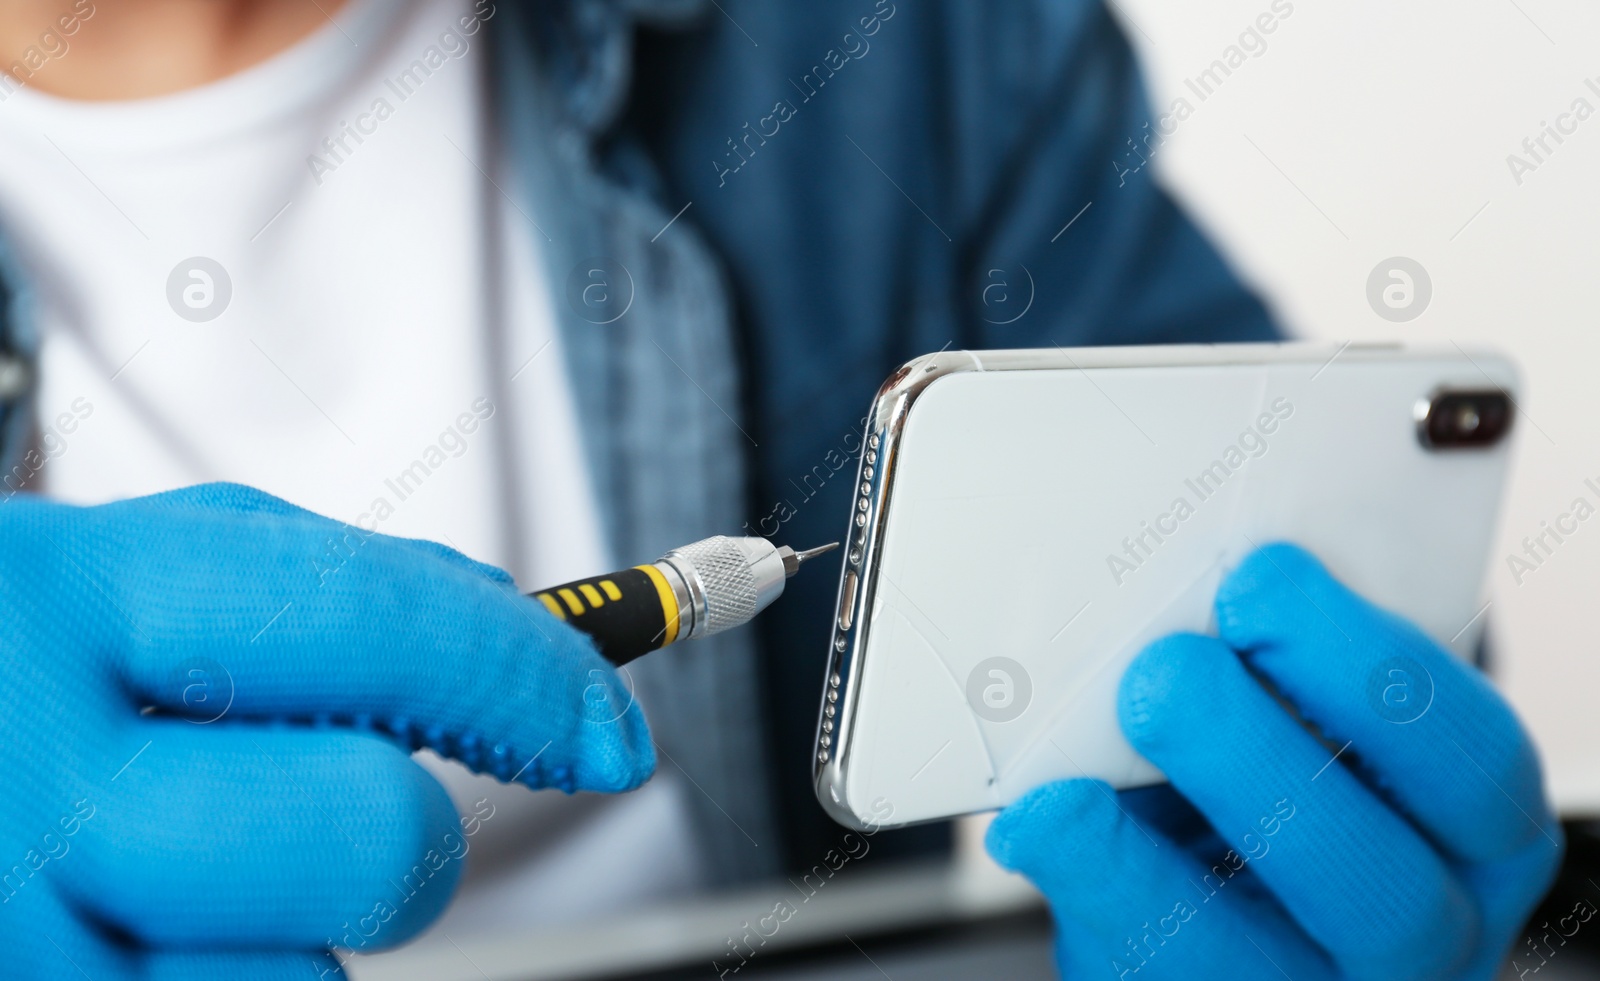 Photo of Technician repairing broken smartphone, closeup of hands